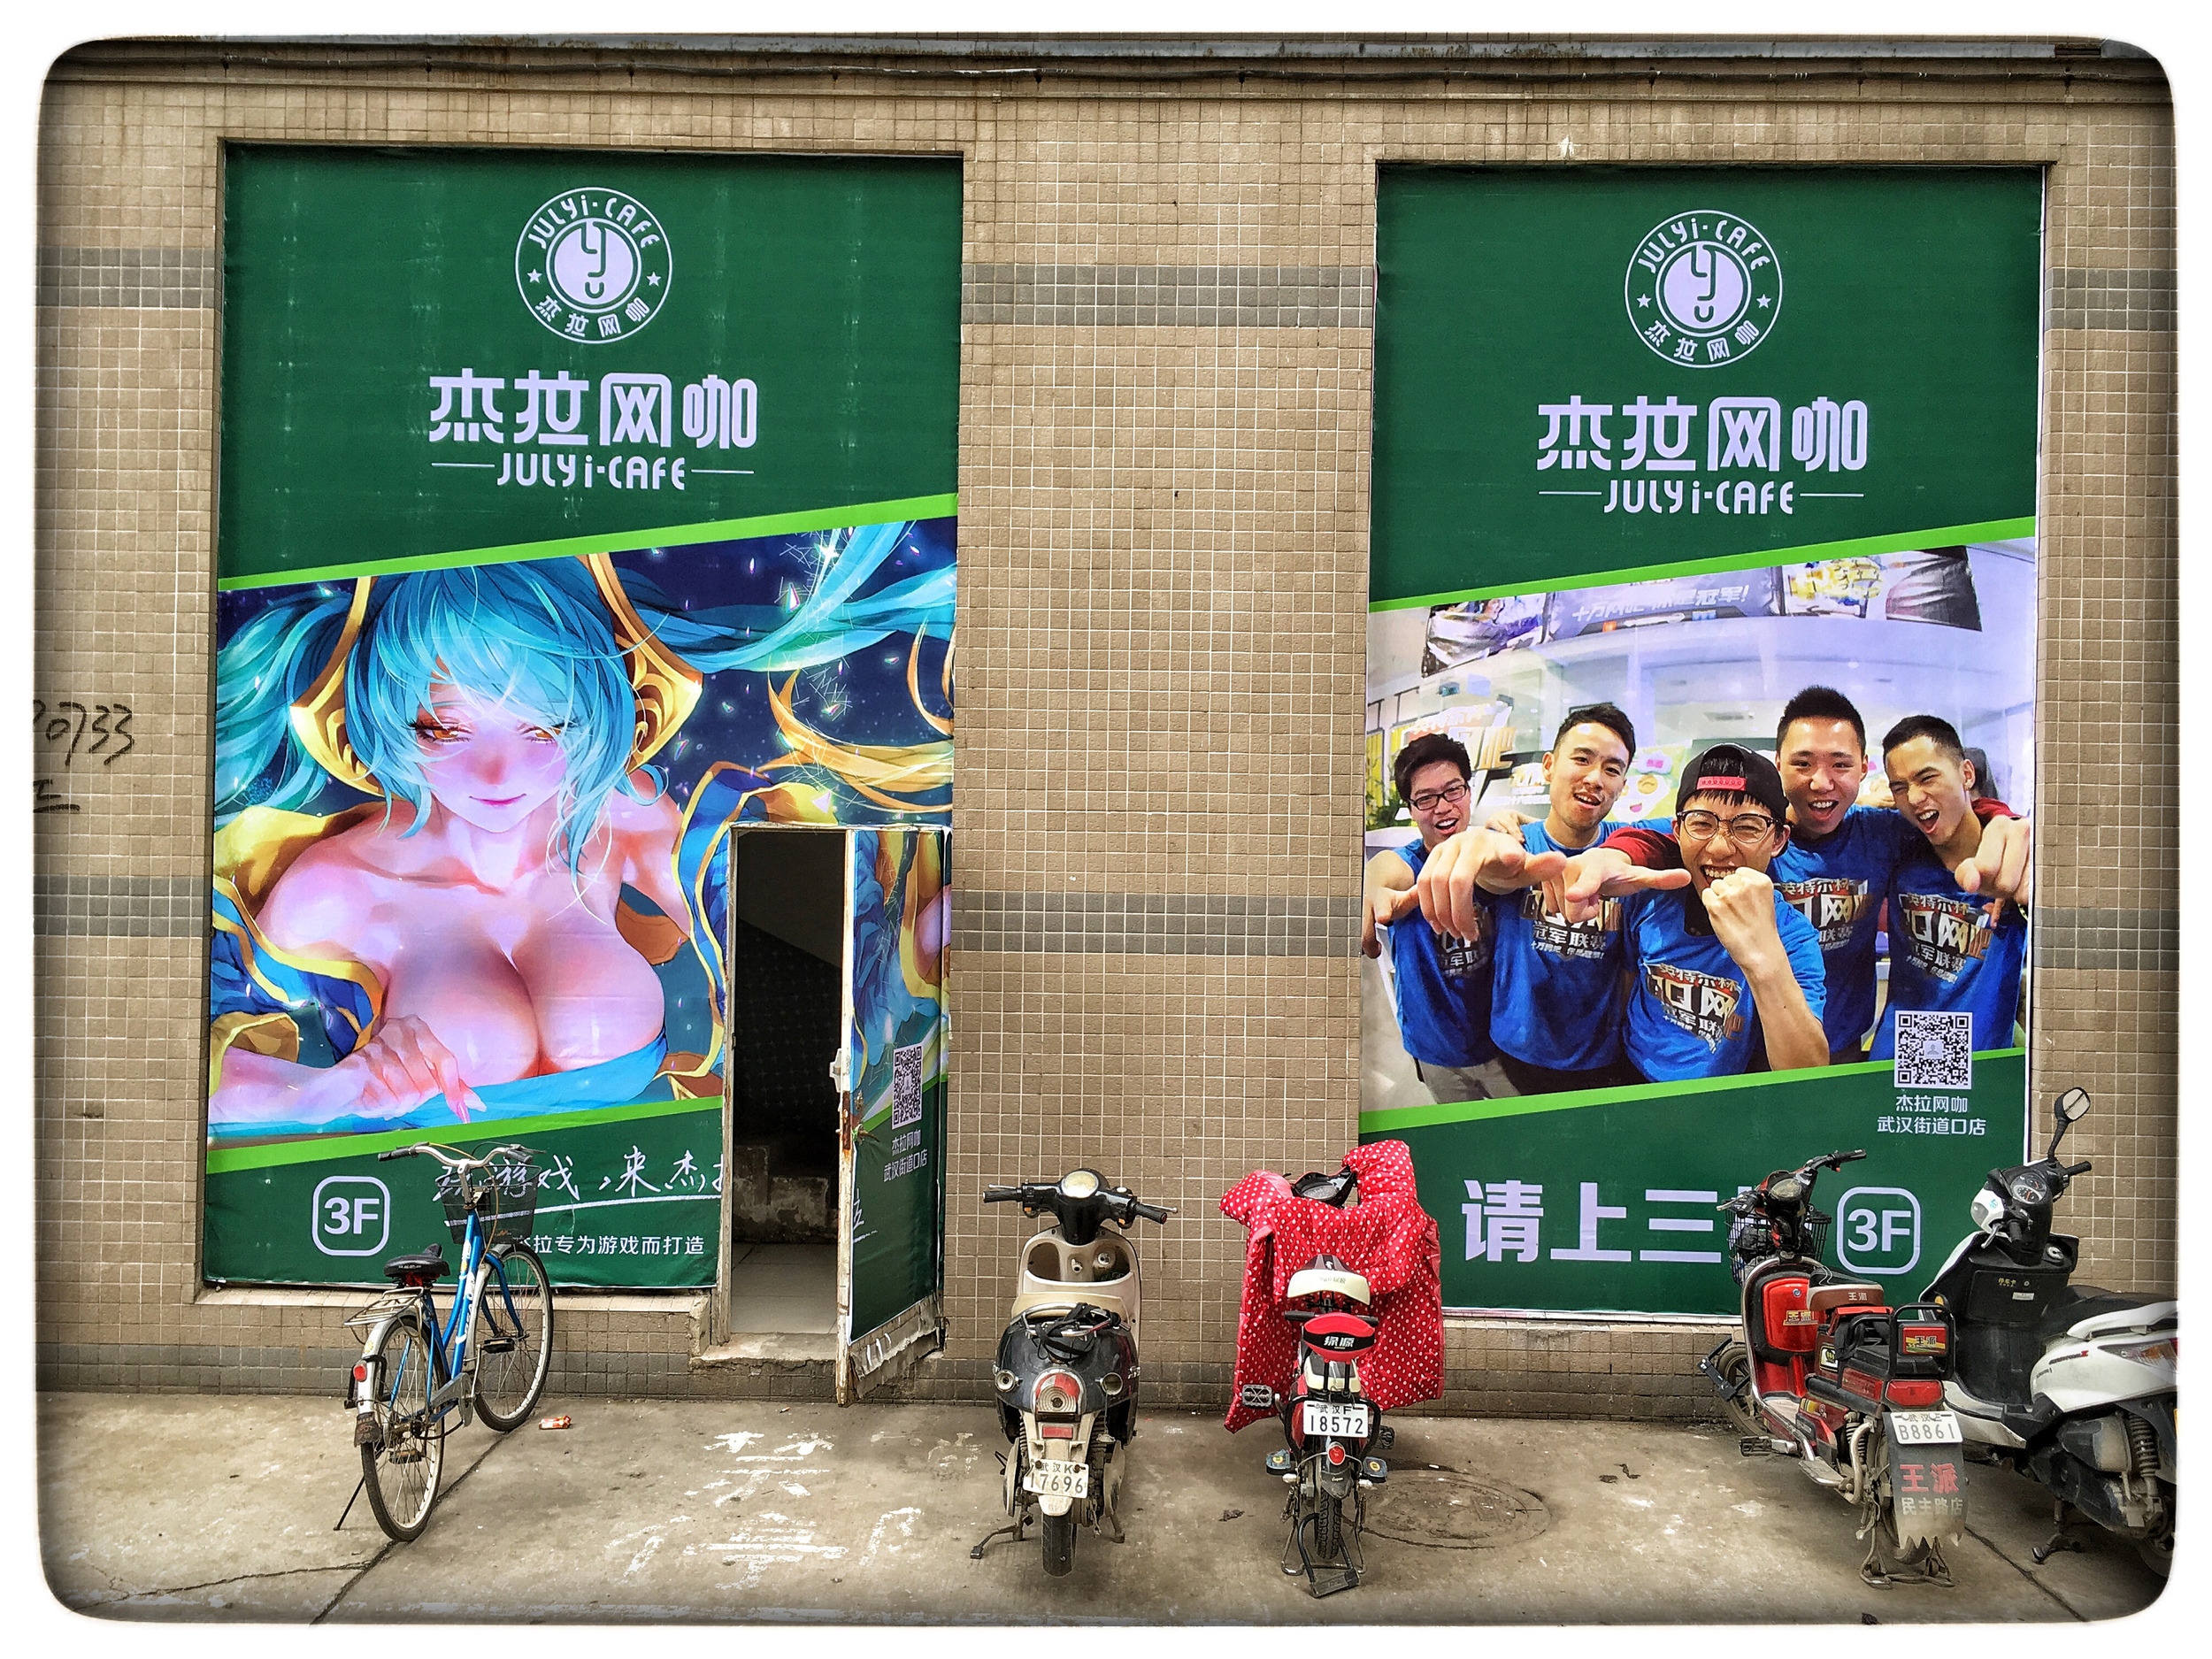  Wuhan doorway ads 